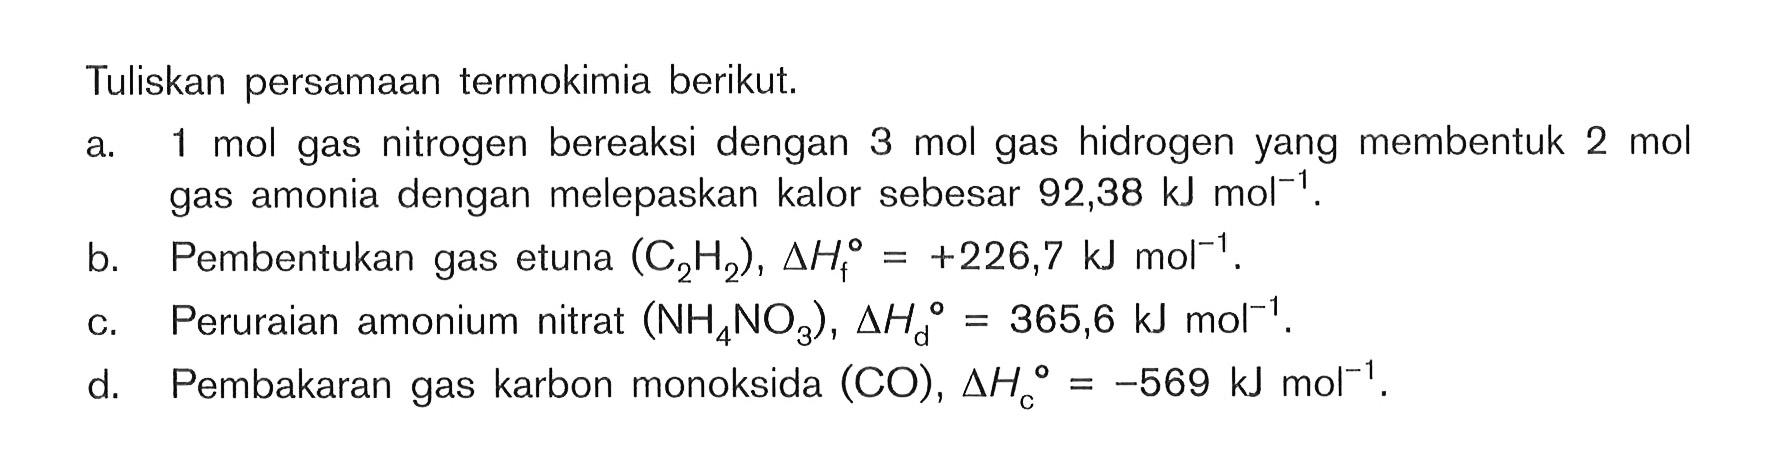 Tuliskan persamaan termokimia berikut. a. 1 mol gas nitrogen bereaksi dengan 3 mol gas hidrogen yang membentuk 2 mol gas amonia dengan melepaskan kalor sebesar 92,38 kJ mol^-1 b. Pembentukan gas etuna (C2H2), delta Hf^0 = +226,7 kJ mol^-1 c. Peruraian amonium nitrat (NH4NO3) , delta Hd^0 = 365,6 kJ mol^-1 d. Pembakaran gas karbon monoksida (CO), delta Hc^0 = -569 kJ mol^-1